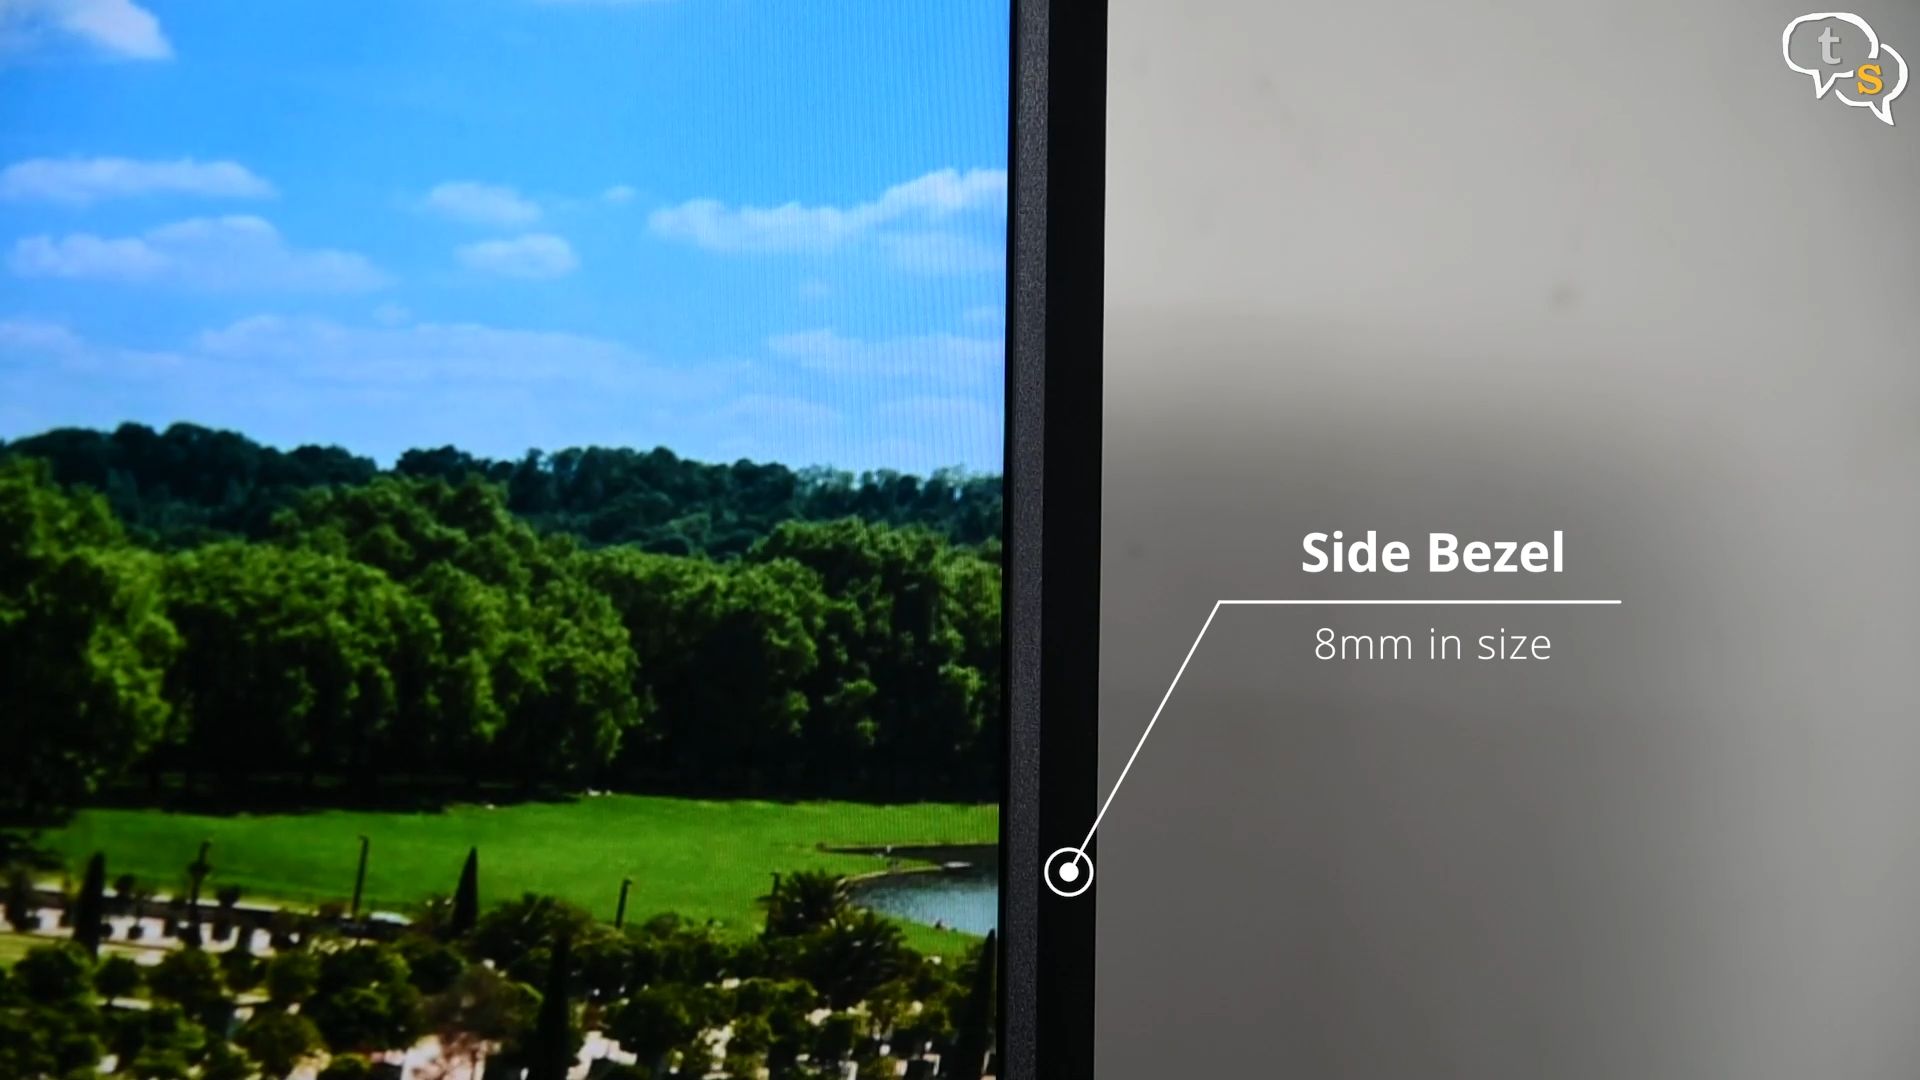 BenQ EW3270U 4K HDR monitor Bezels